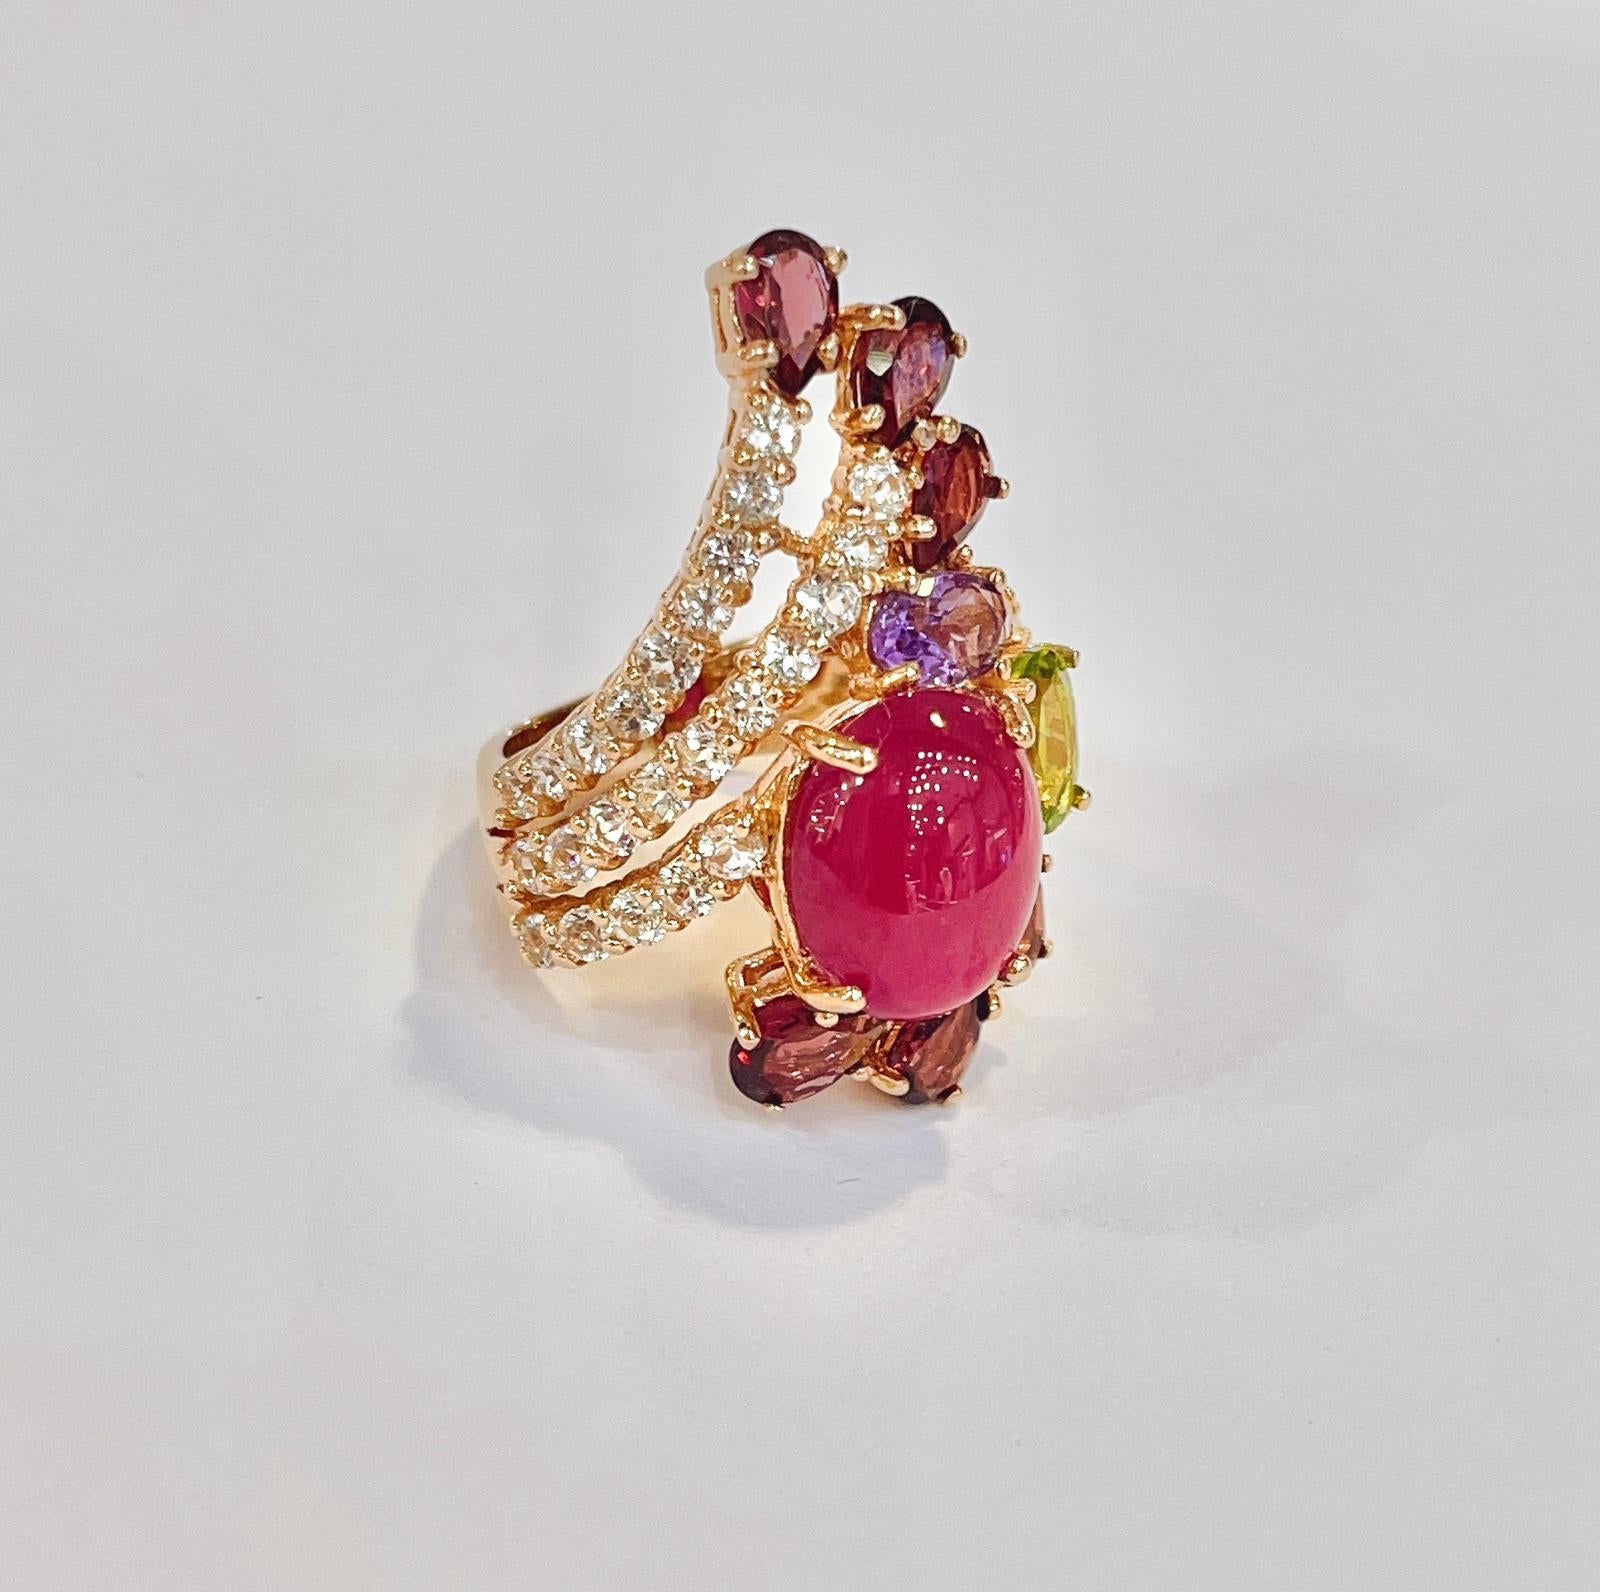 Bochic “Capri” Ruby & Multi Color Gem Cocktail Ring Set in 22k Gold & Silver 1